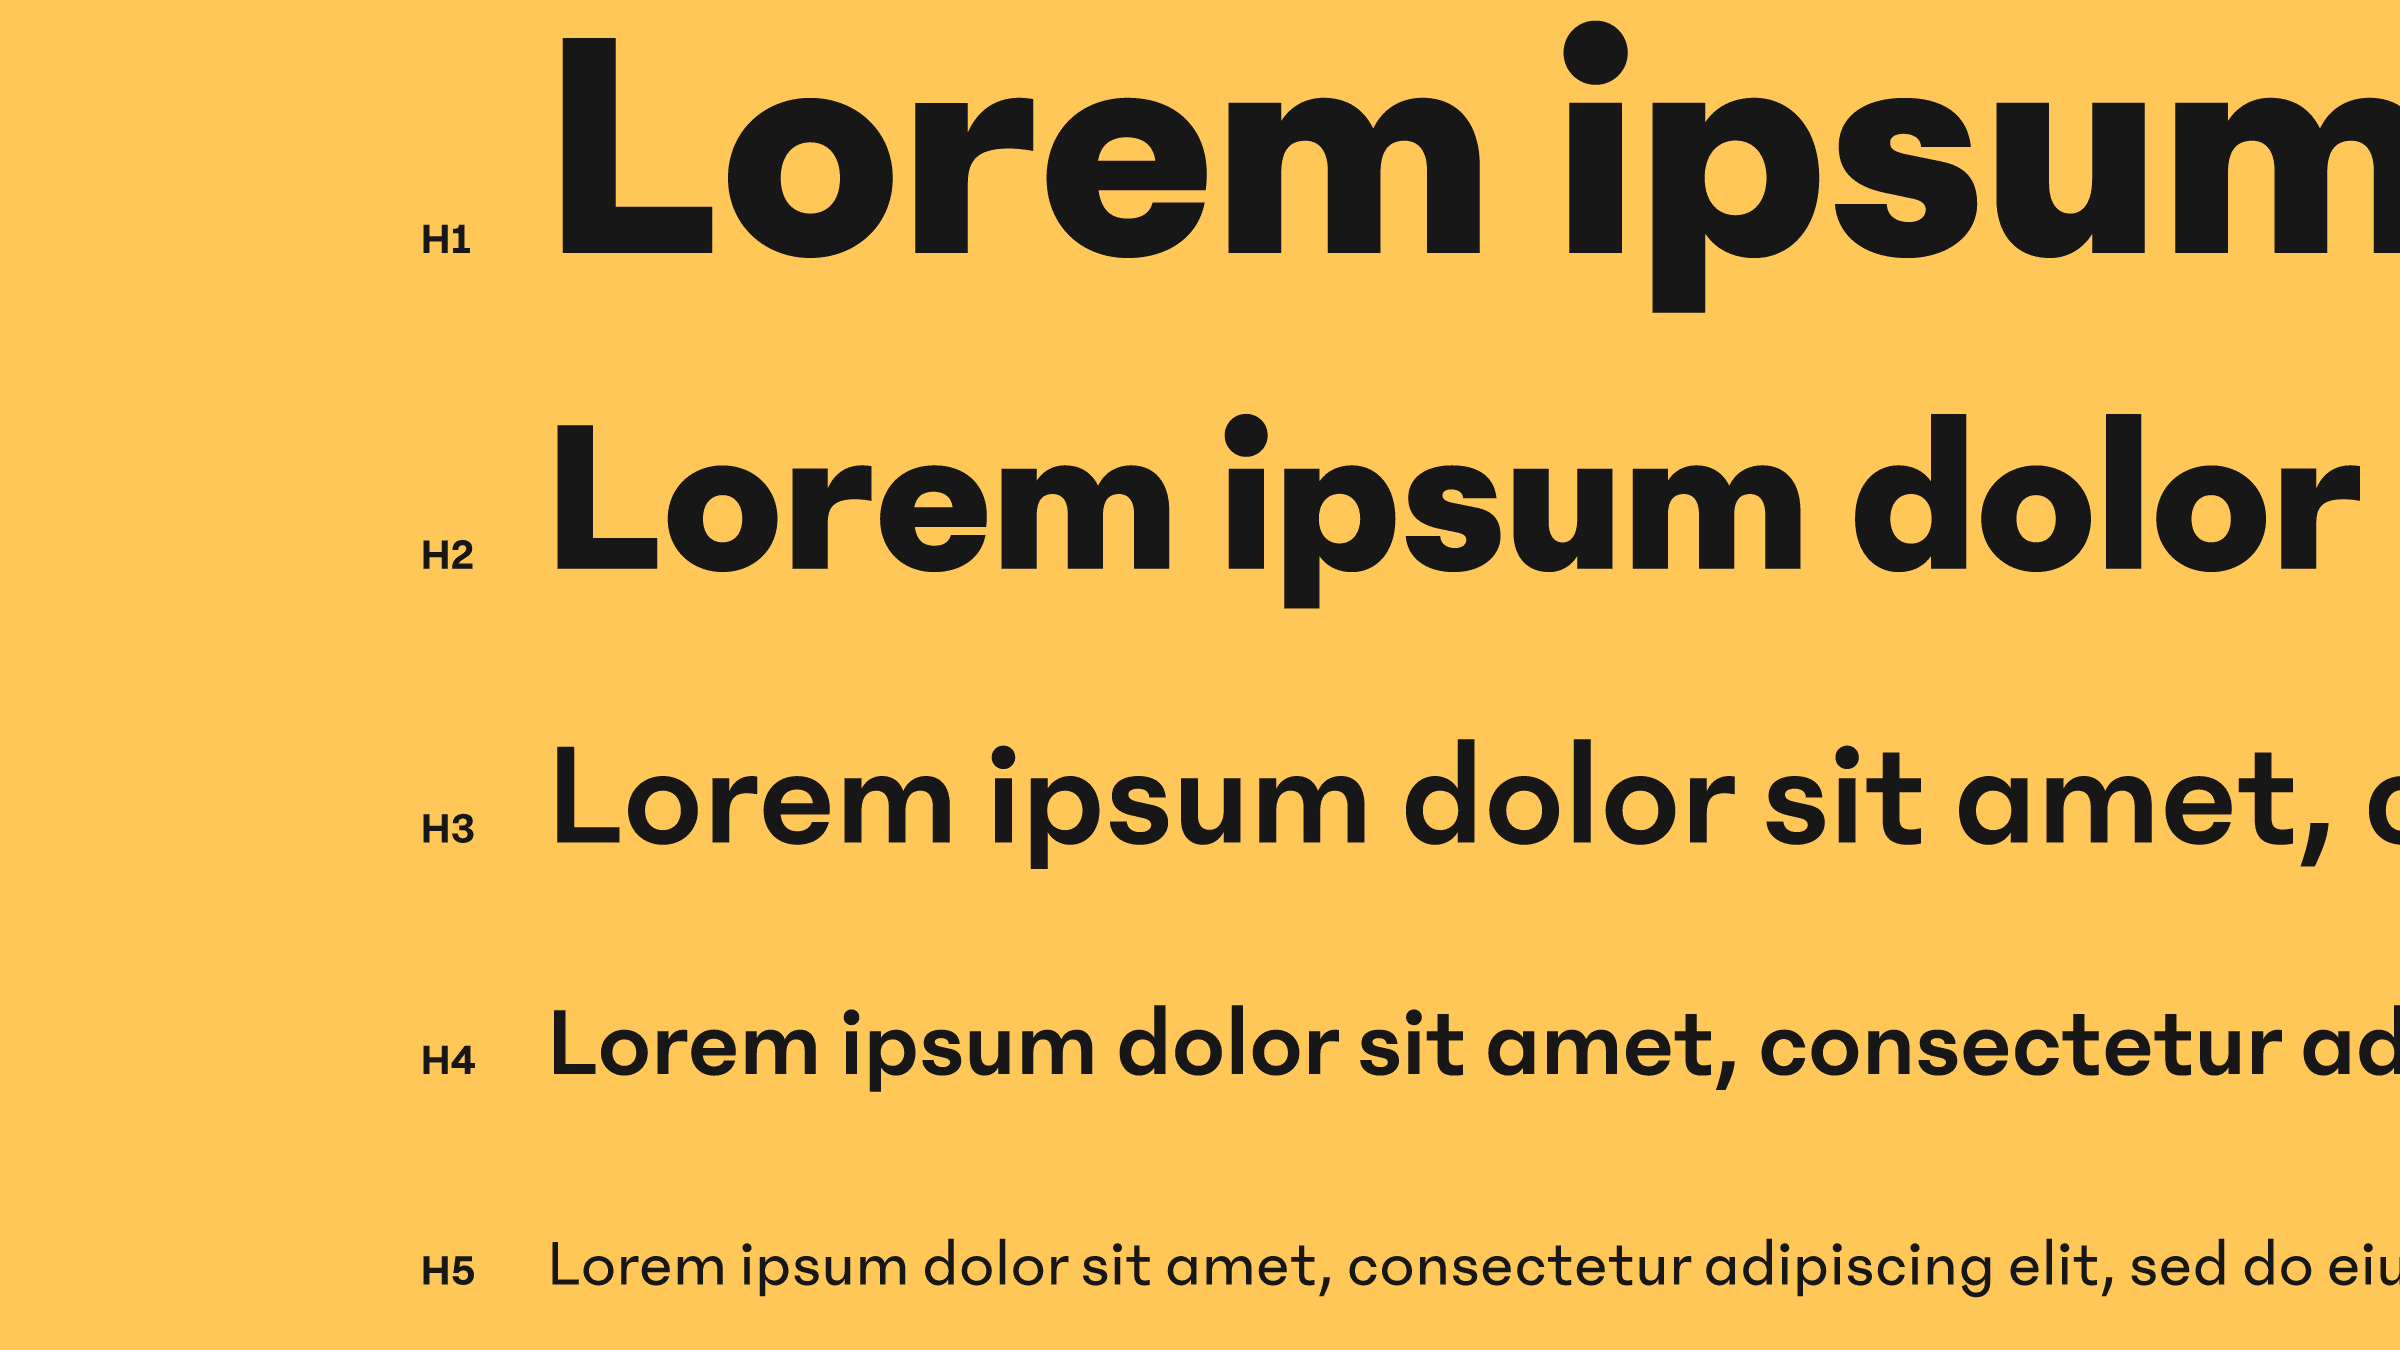 Lorem Ipsum text